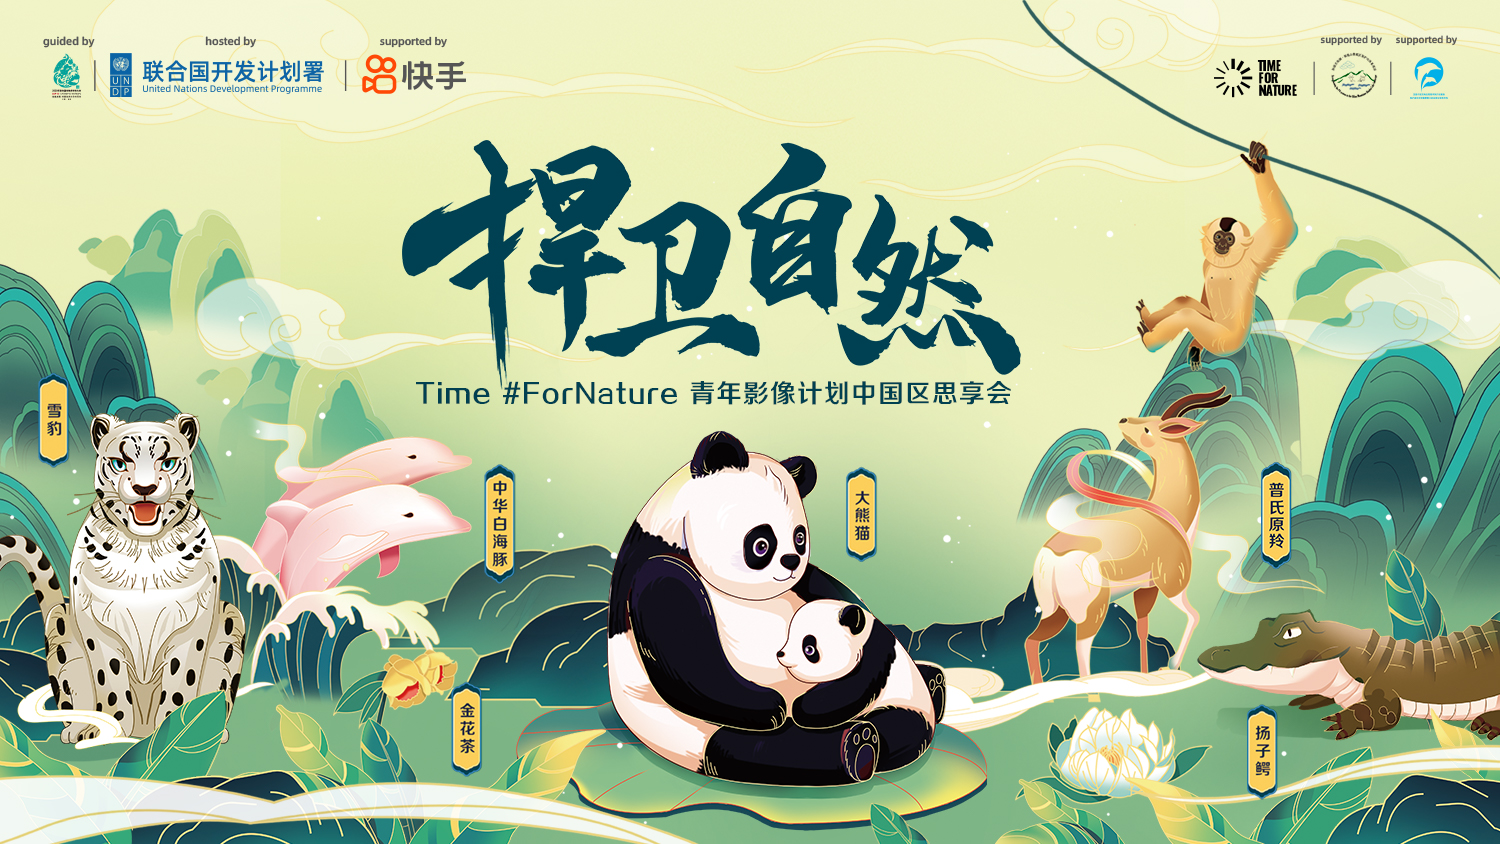 捍卫自然·青年影像计划中国区思享会